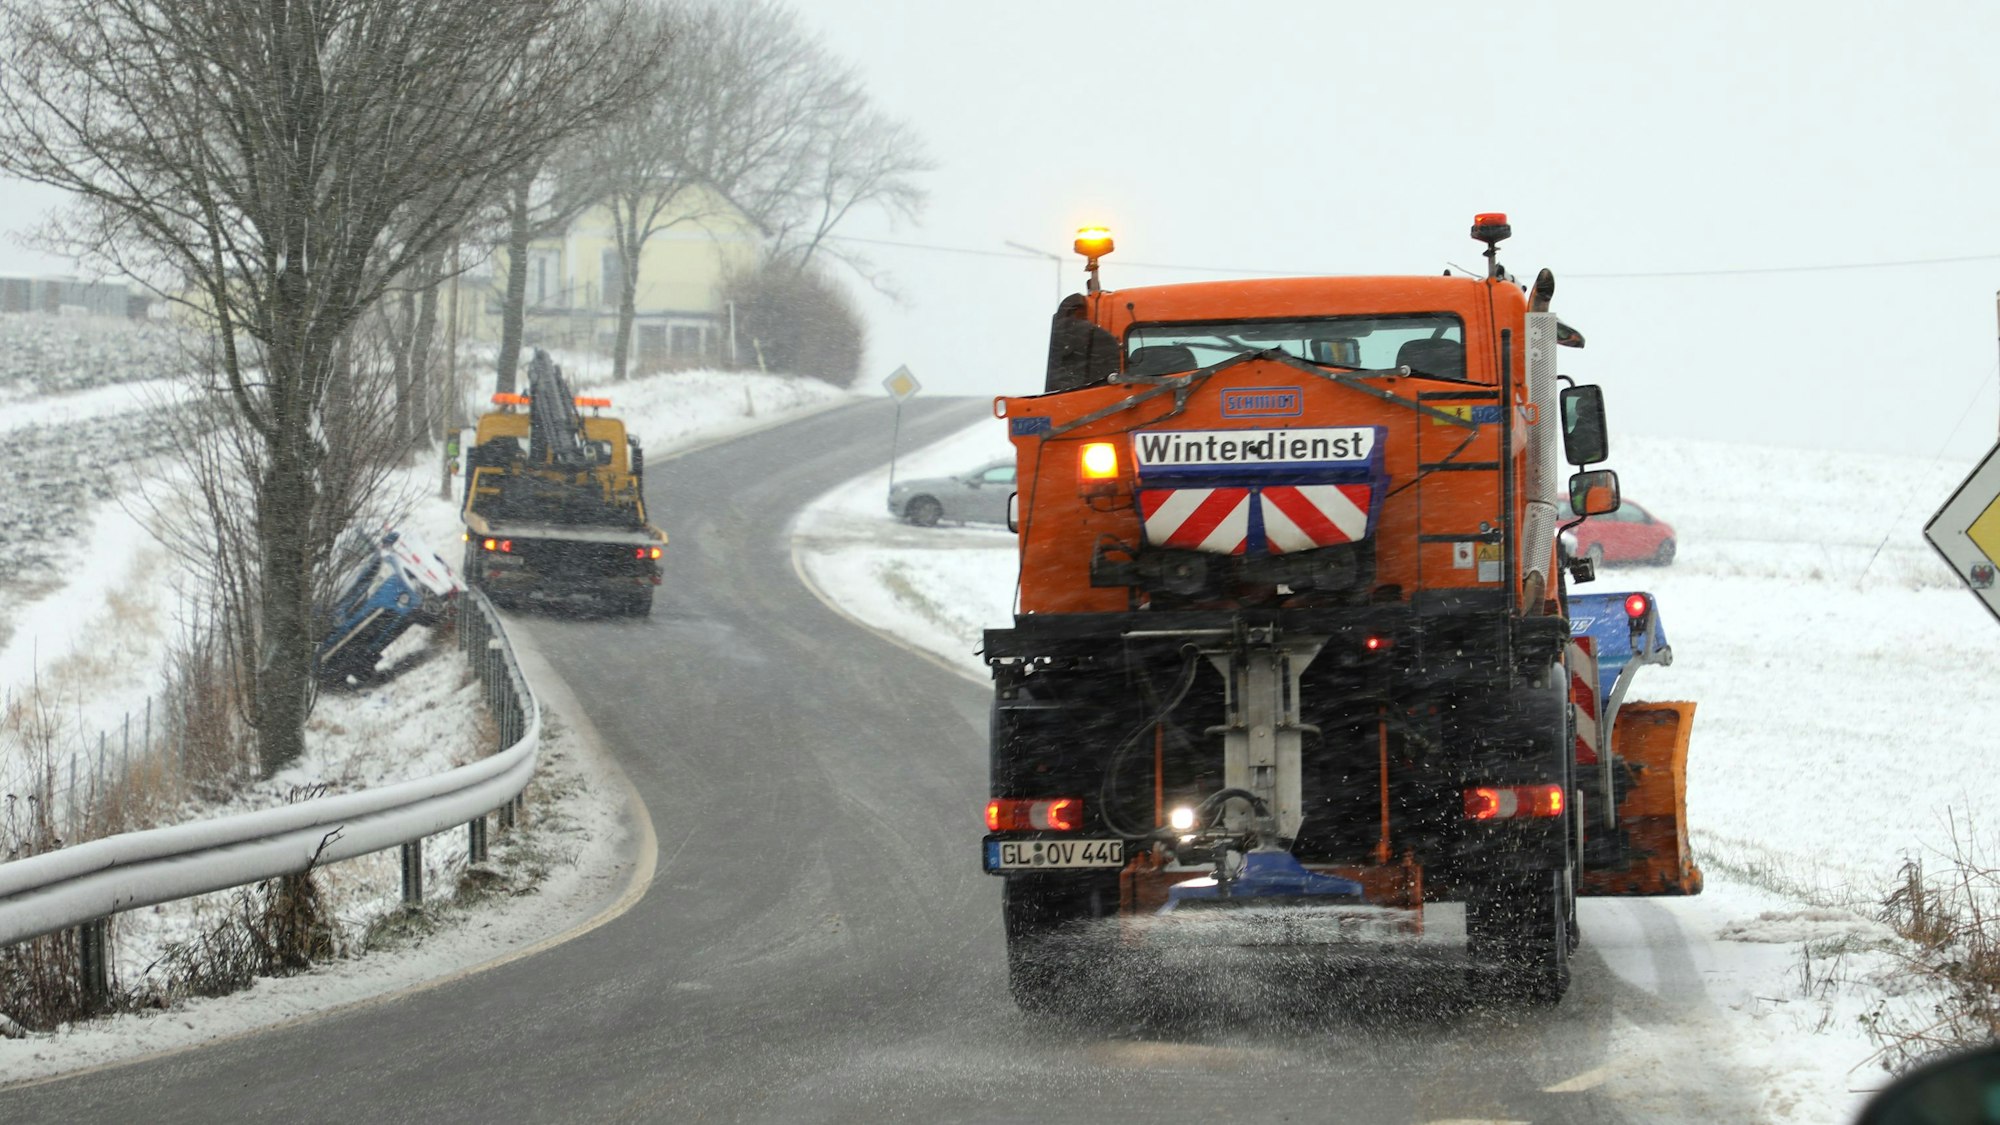 Ein Räumfahrzeug des Winterdienstes befreit eine Straße in der Eifel von Schneemassen. Weitere Schneeflocken fallen vom Himmel. (Symbolbild)